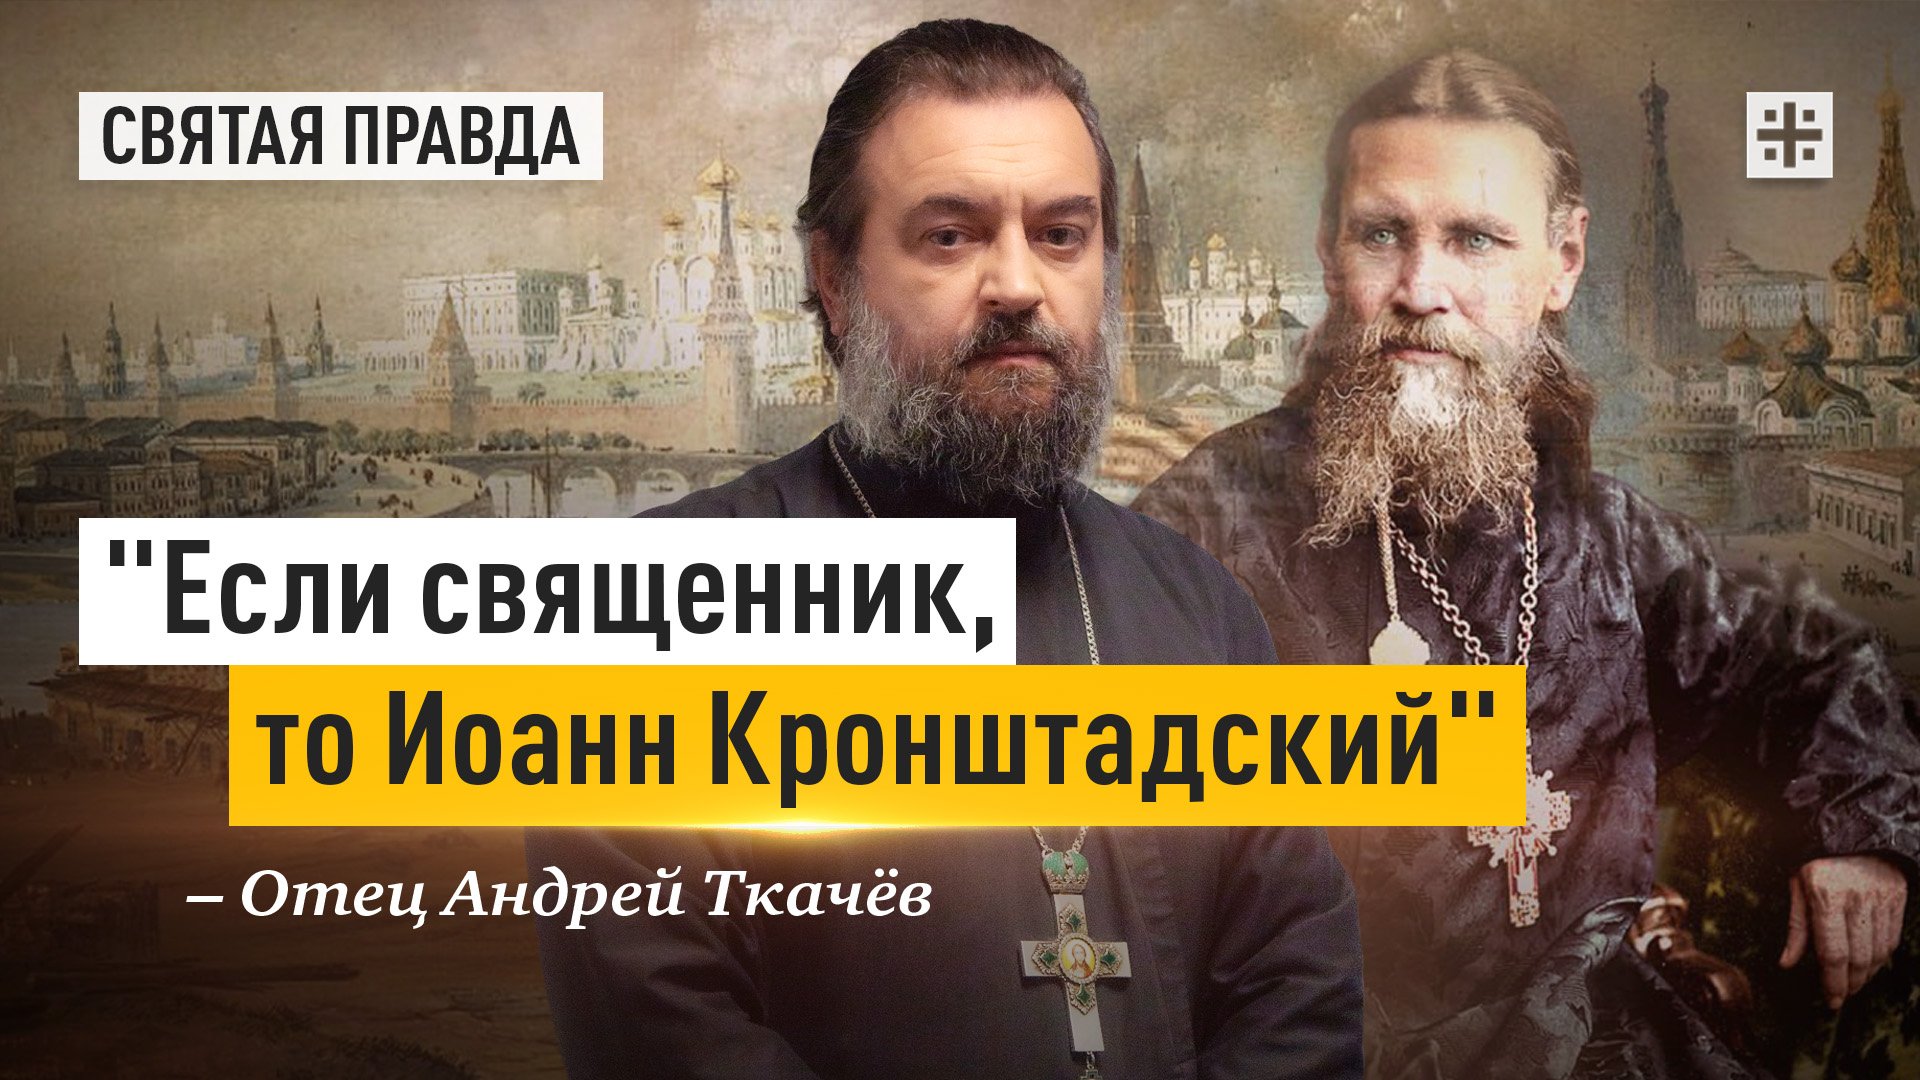 "Если священник, то Иоанн Кронштадский": Всемирный идеал православного пастыря — отец Андрей Ткачёв